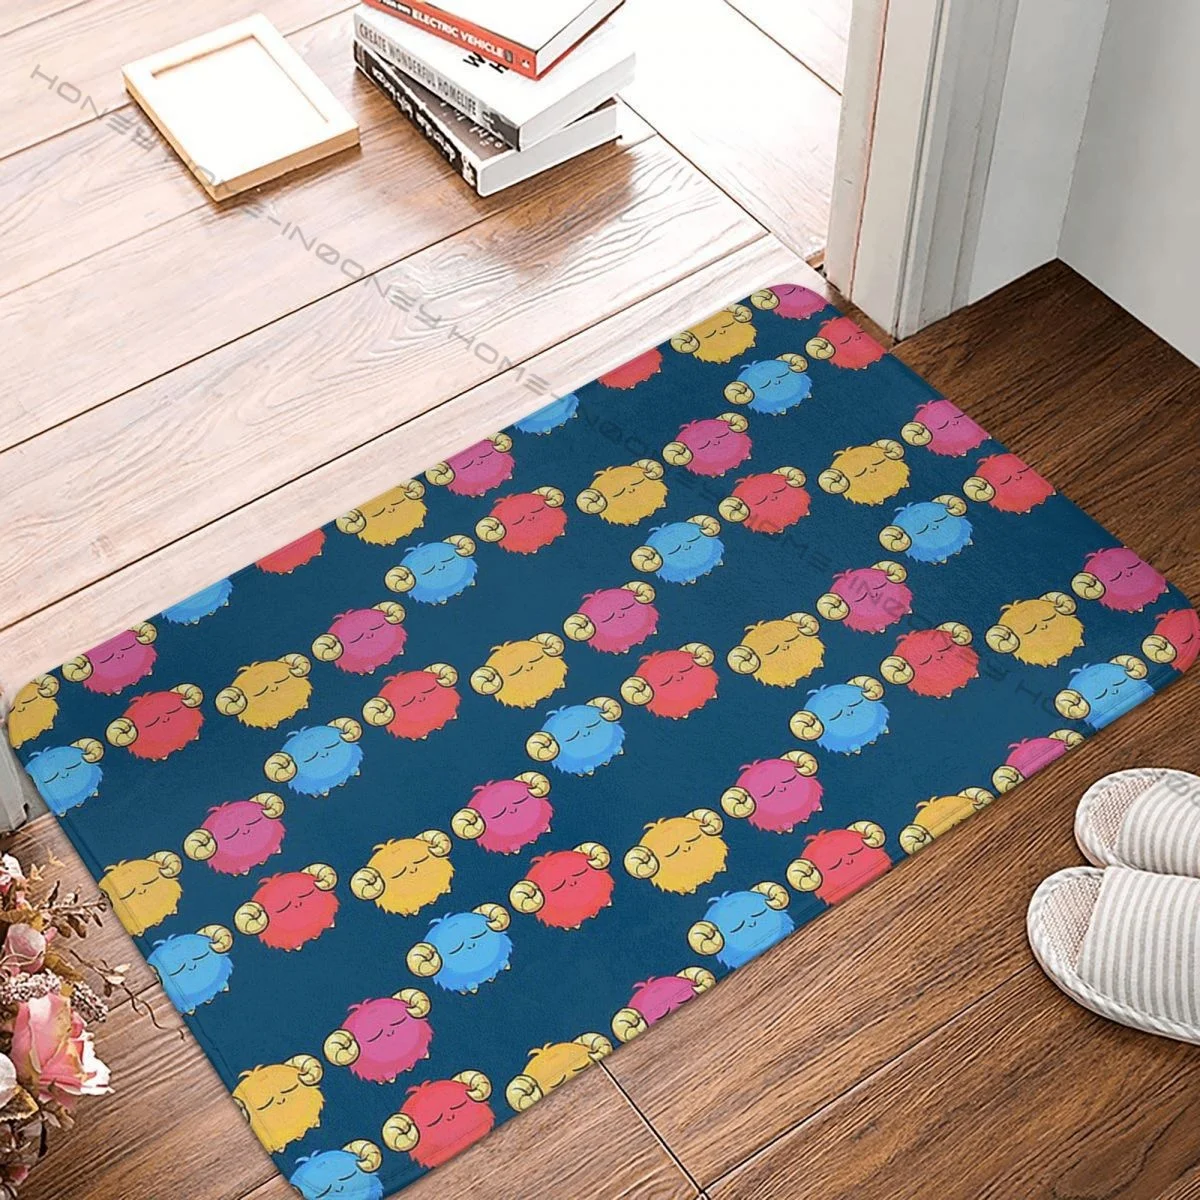 

Yugioh Duel Monsters Bedroom Mat Scapegoat Doormat Living Room Carpet Outdoor Rug Home Decor